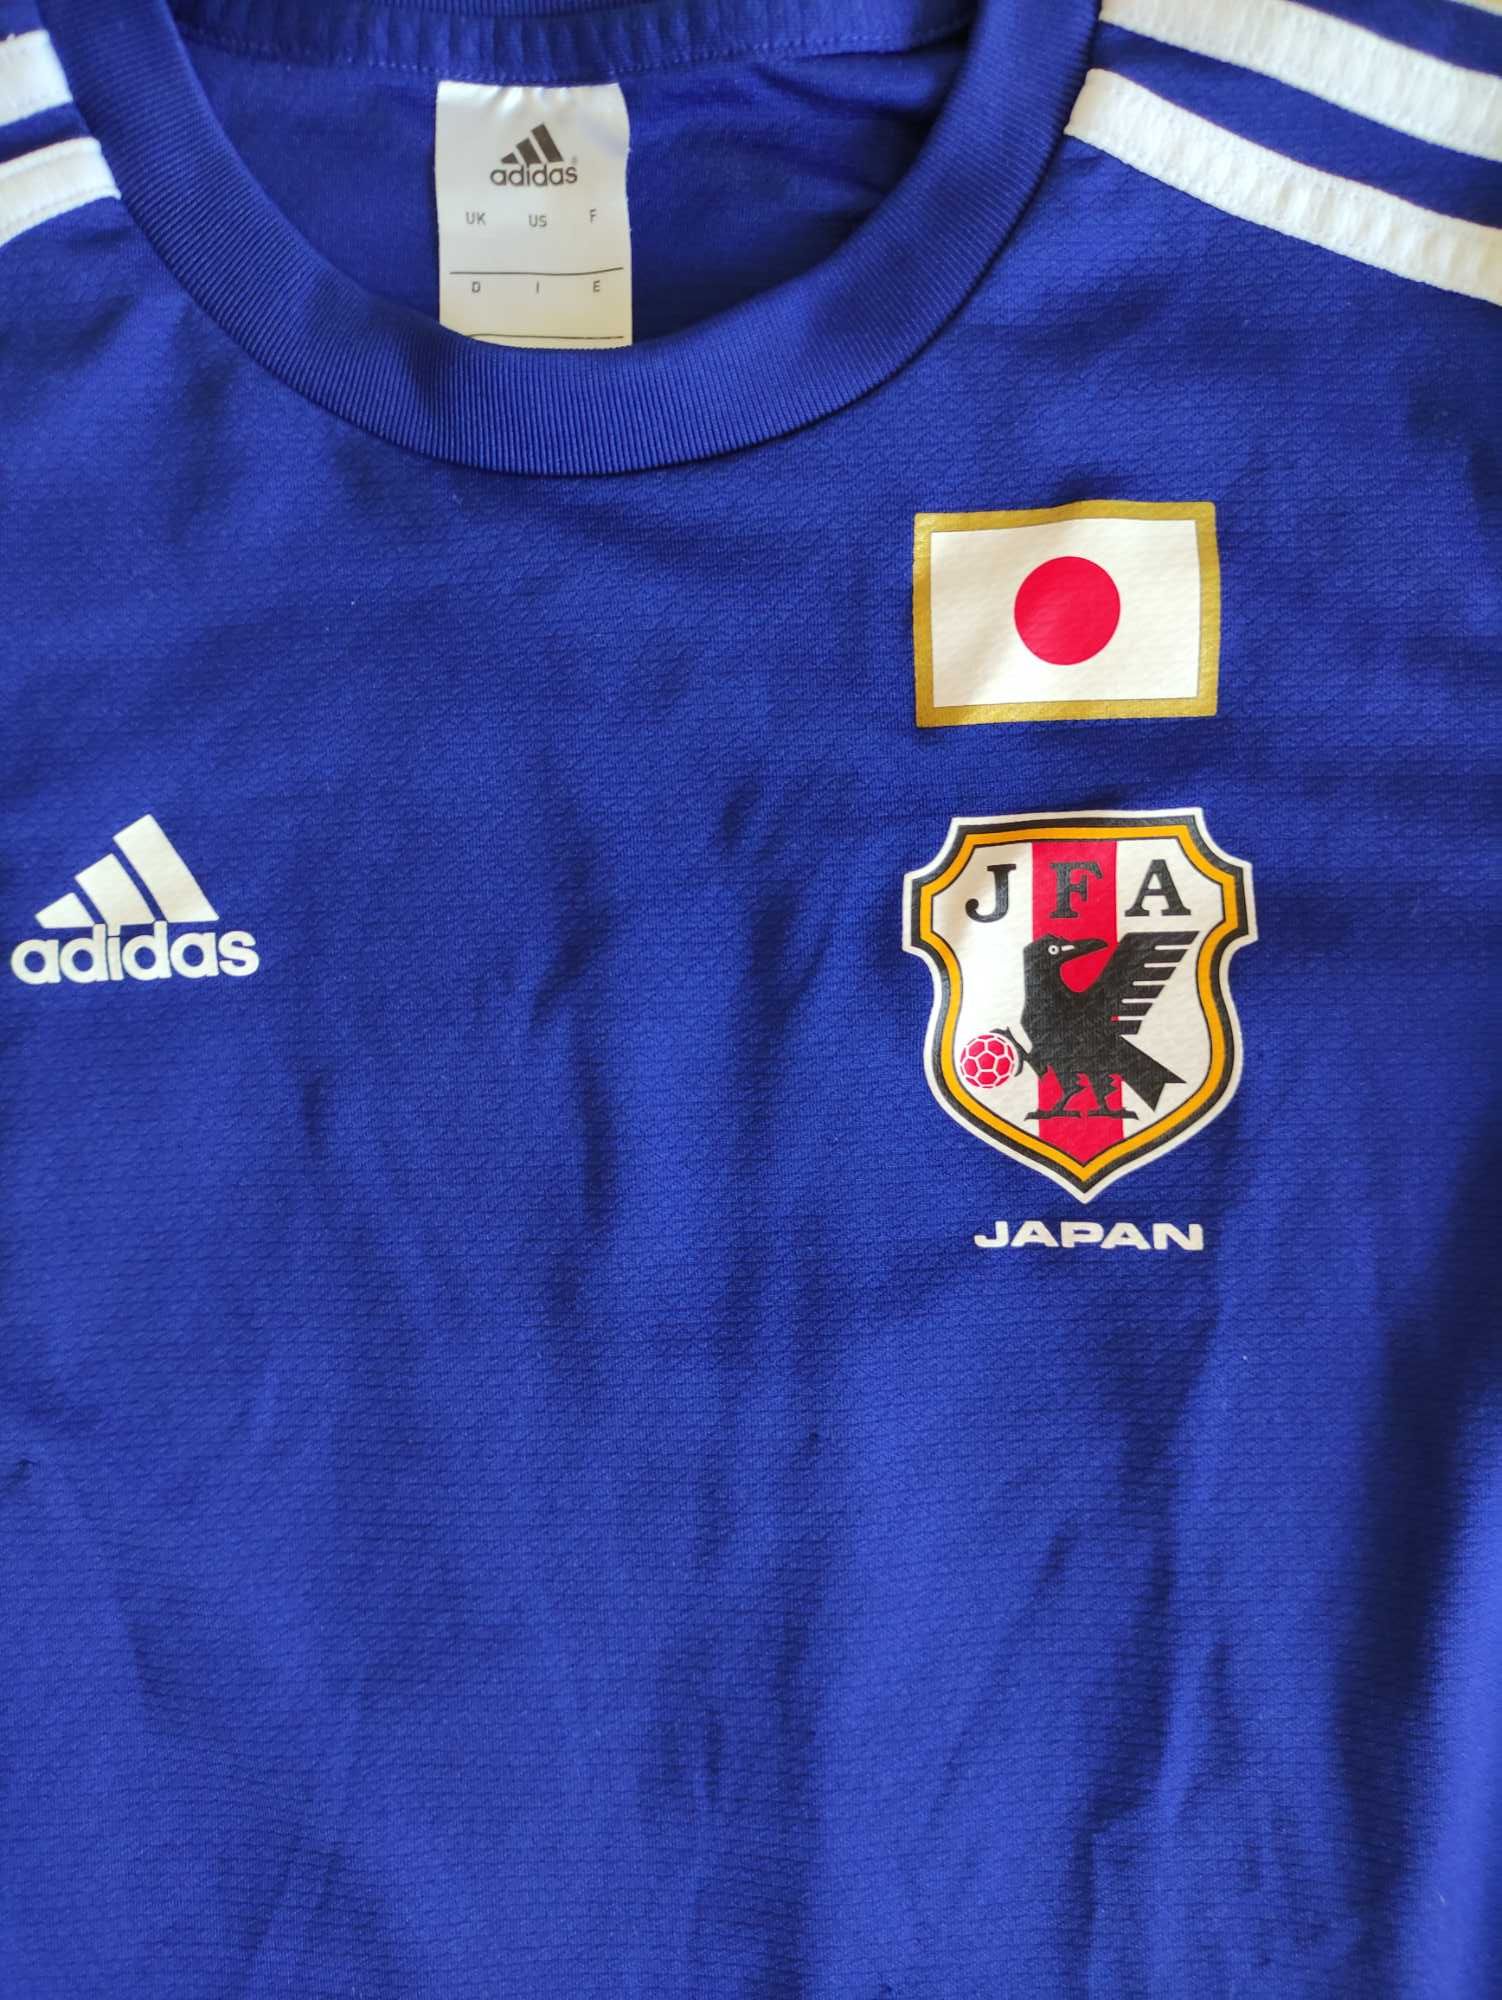 екип на японския национален отбор за момче около 7-10г.